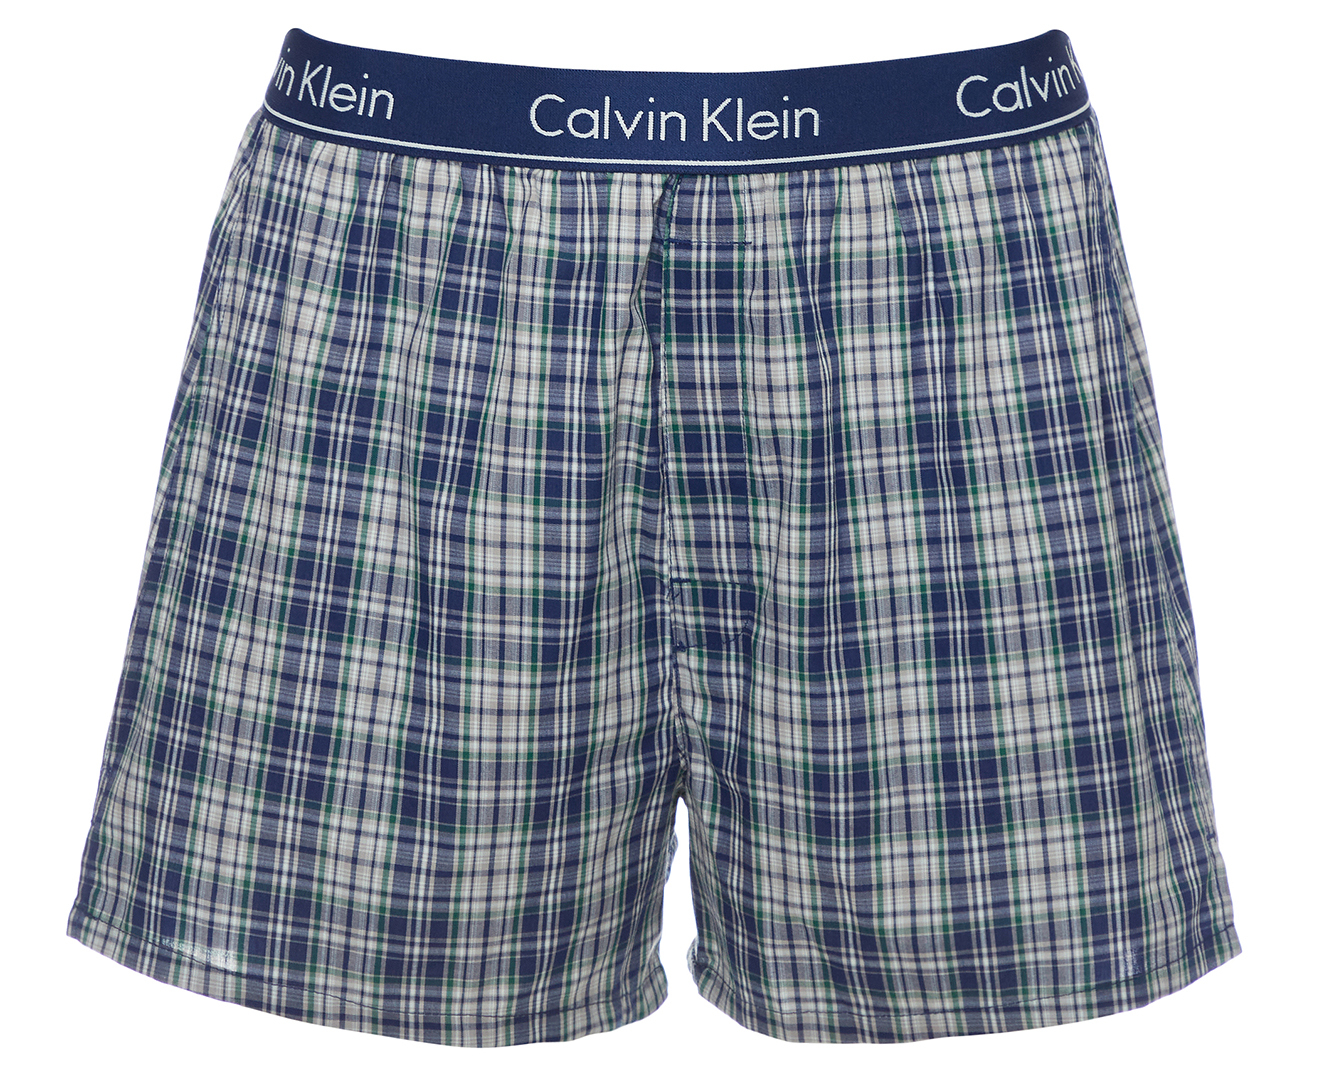 Calvin Klein Men's Traditional Boxers - Plaid Blue | Catch.co.nz